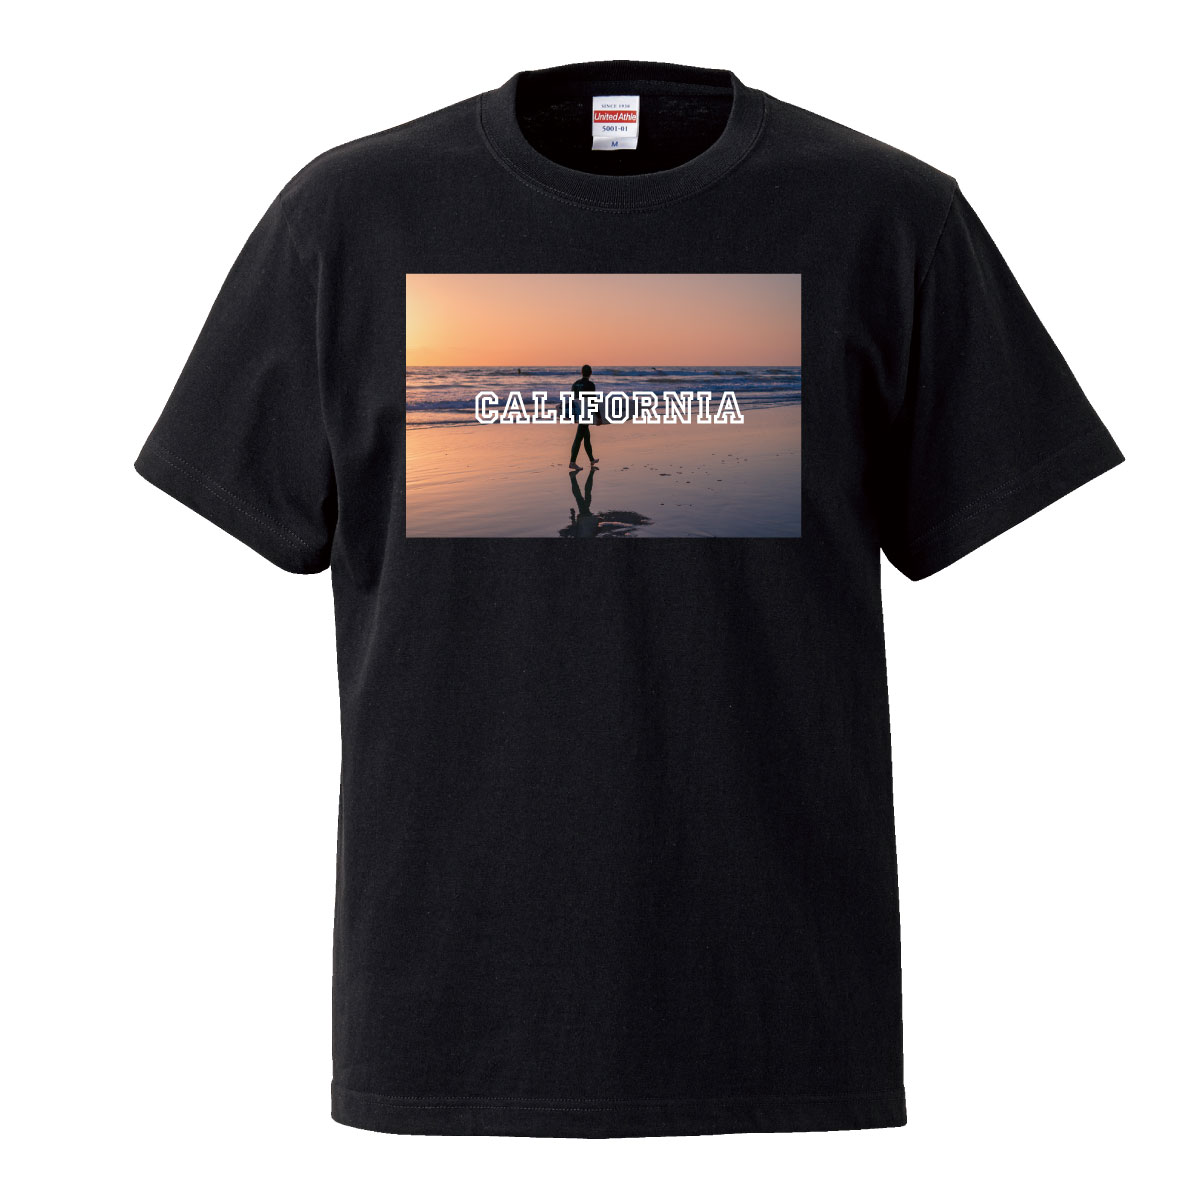 カリフォルニア SK8 スケボー デッキ california 西海岸 westcoast HIPHOP 夜景 B系 ダンス 衣装 Tシャツ T-shirt ティーシャツ 半袖 大きいサイズあり big size ビックサイズ